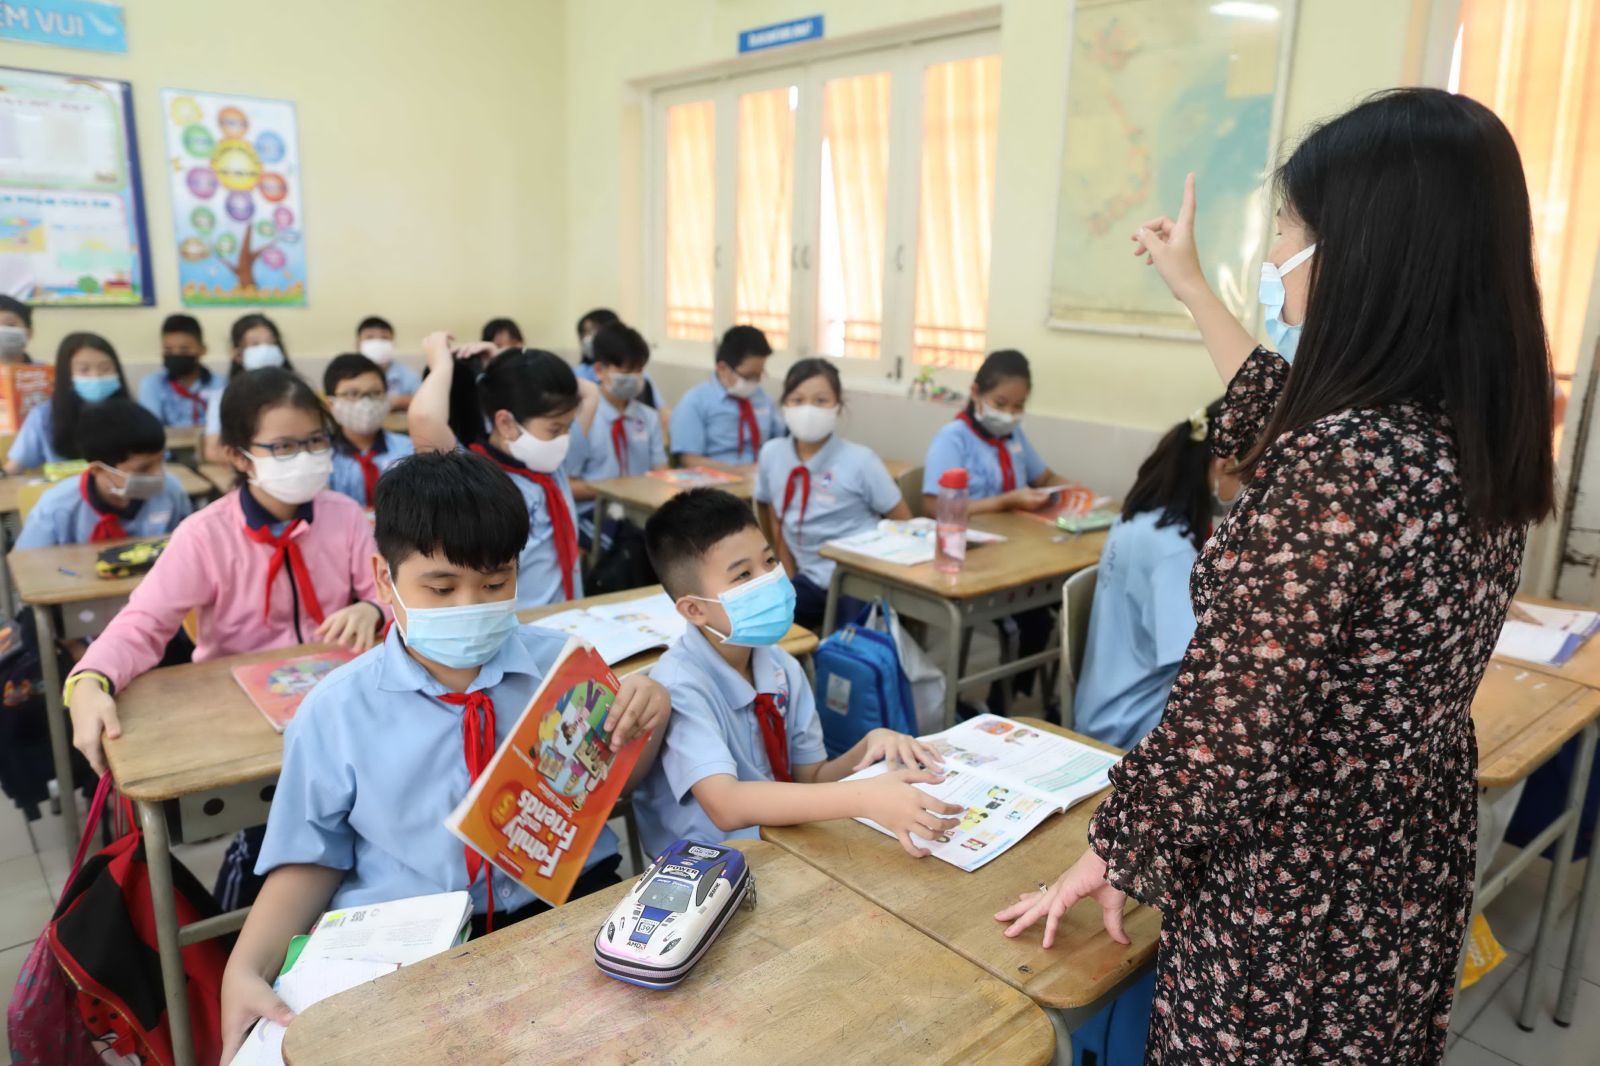 Thiếu hàng trăm giáo viên, Bắc Kạn ban hành chính sách đào tạo và bồi dưỡng mới